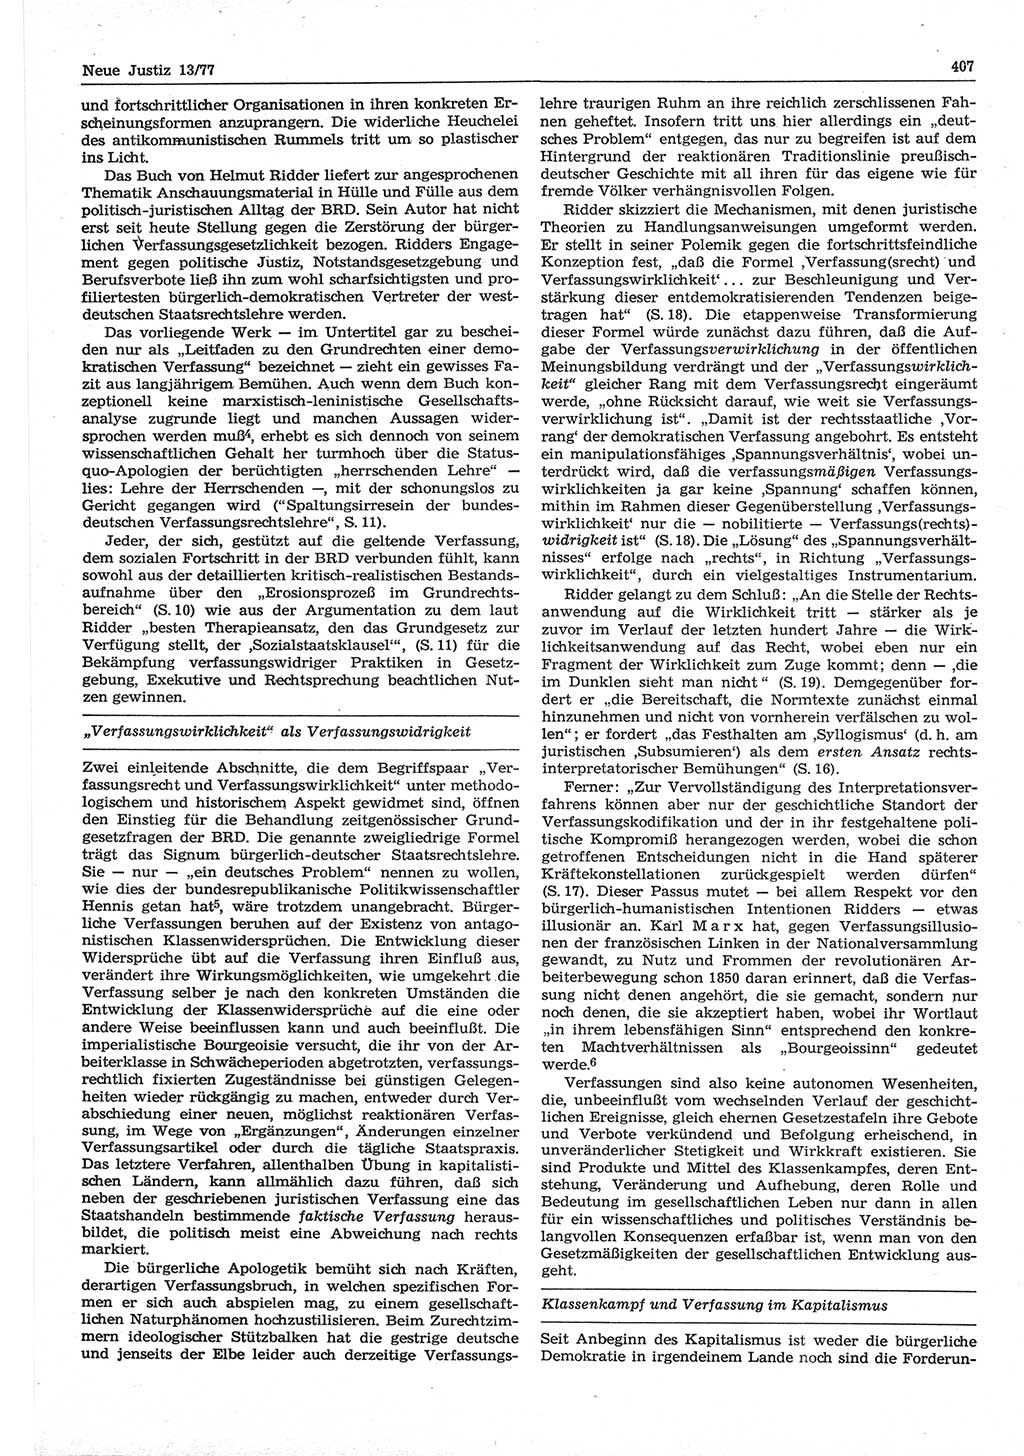 Neue Justiz (NJ), Zeitschrift für Recht und Rechtswissenschaft-Zeitschrift, sozialistisches Recht und Gesetzlichkeit, 31. Jahrgang 1977, Seite 407 (NJ DDR 1977, S. 407)